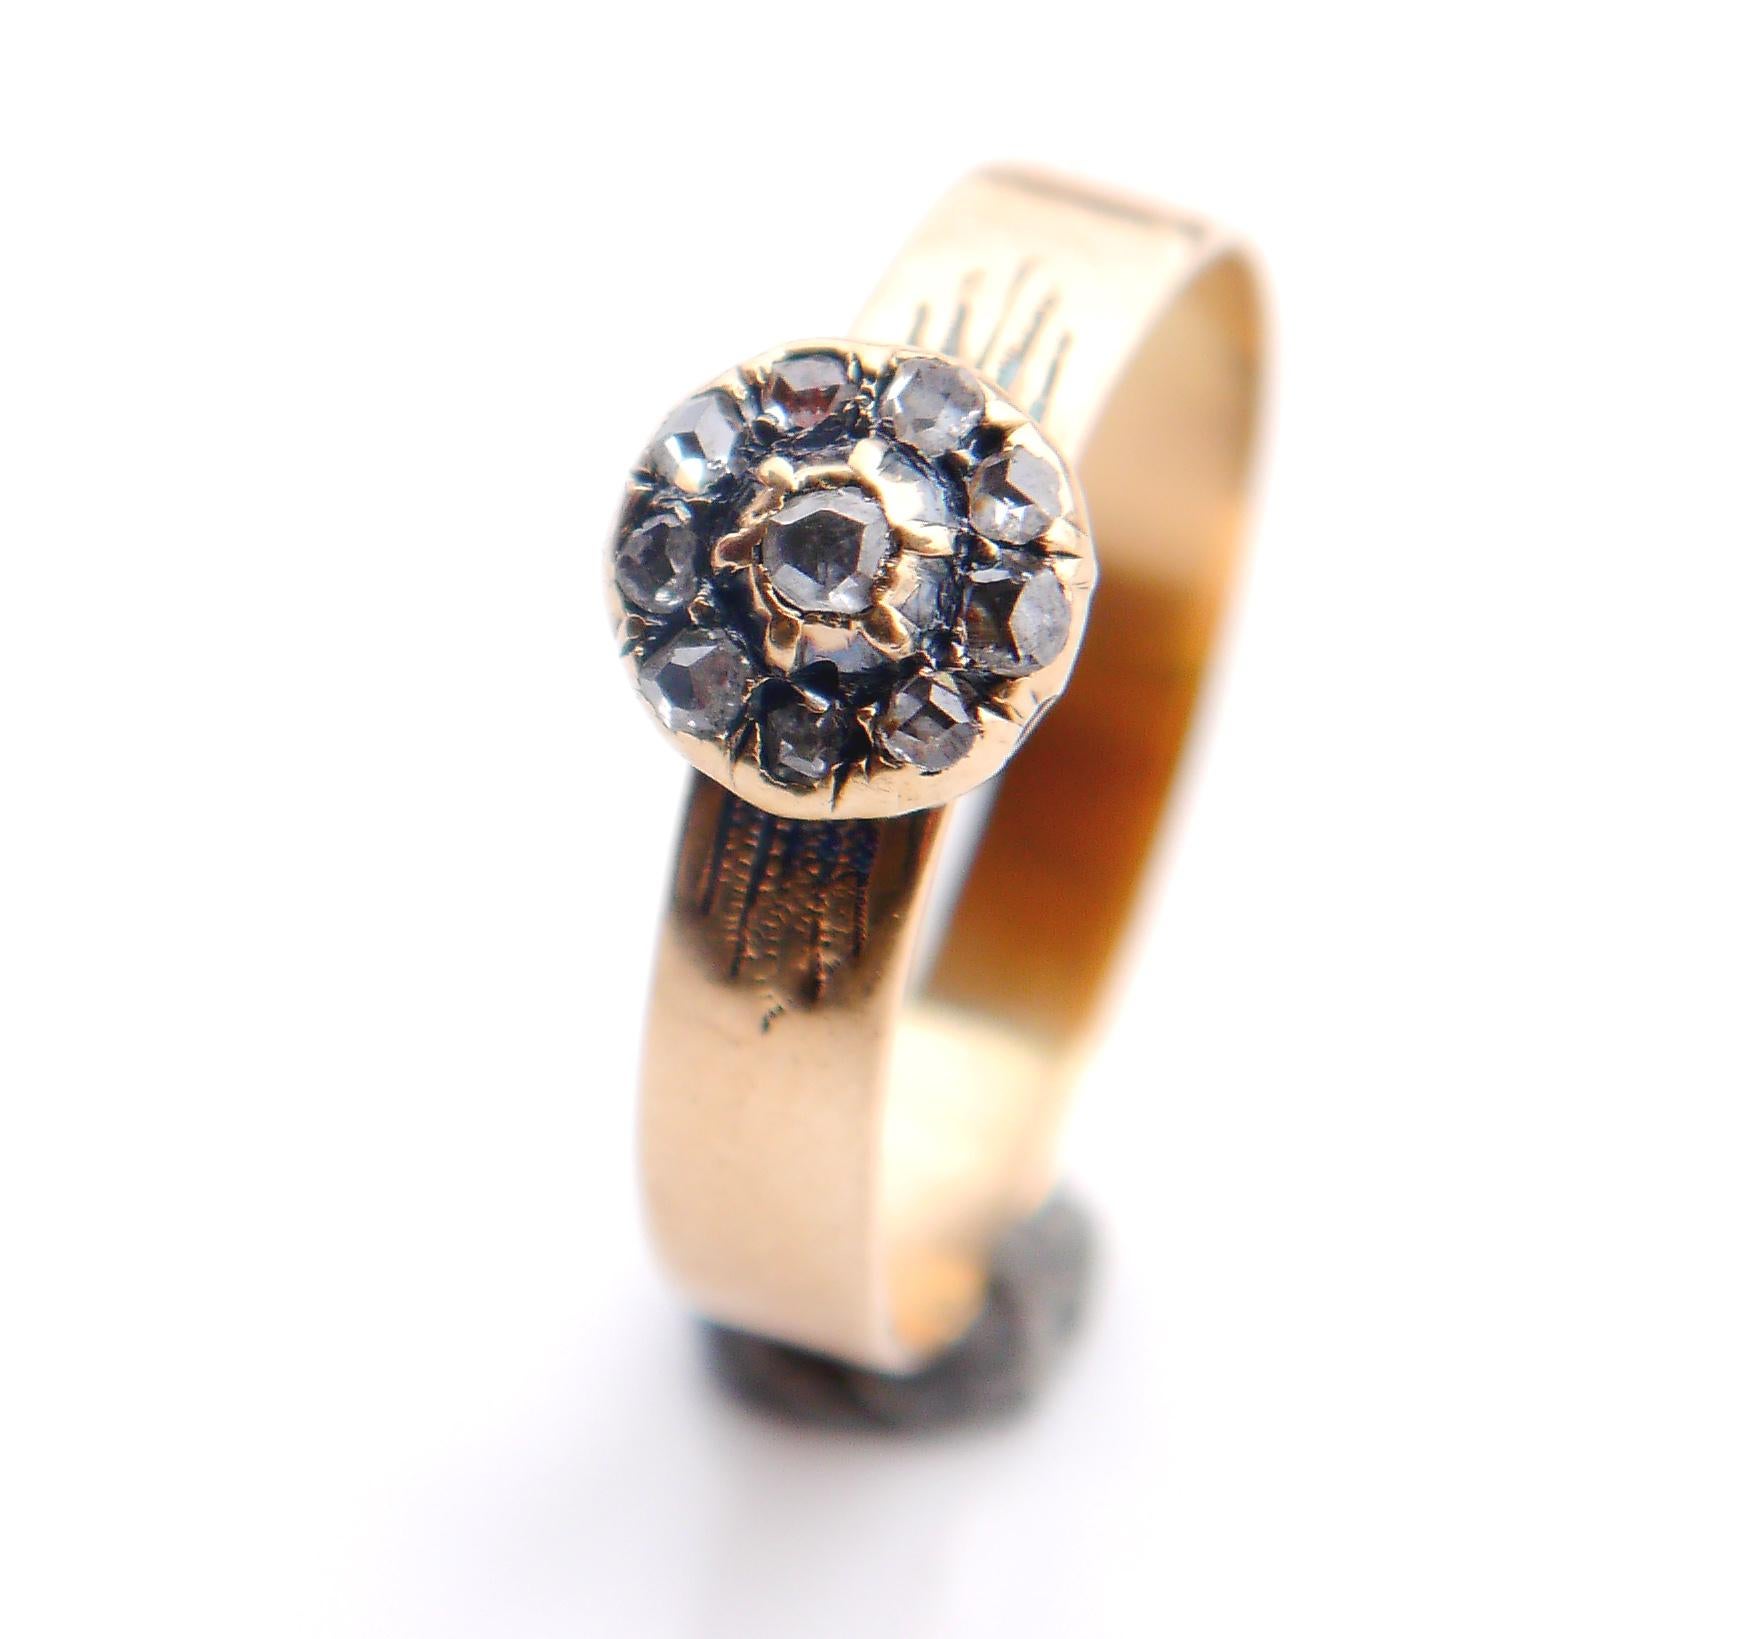 Antiker Halo-Ring mit massivem Rahmen aus 14K Gelbgold mit 10 Diamanten im Rosenschliff, mit geschlossener Rückseite.

Keine Punzierungen, wahrscheinlich deutscher Ring, ca. 1900-1930er Jahre.
Das Band ist 3.5 mm breit. Die Krone hat einen Ø von 8